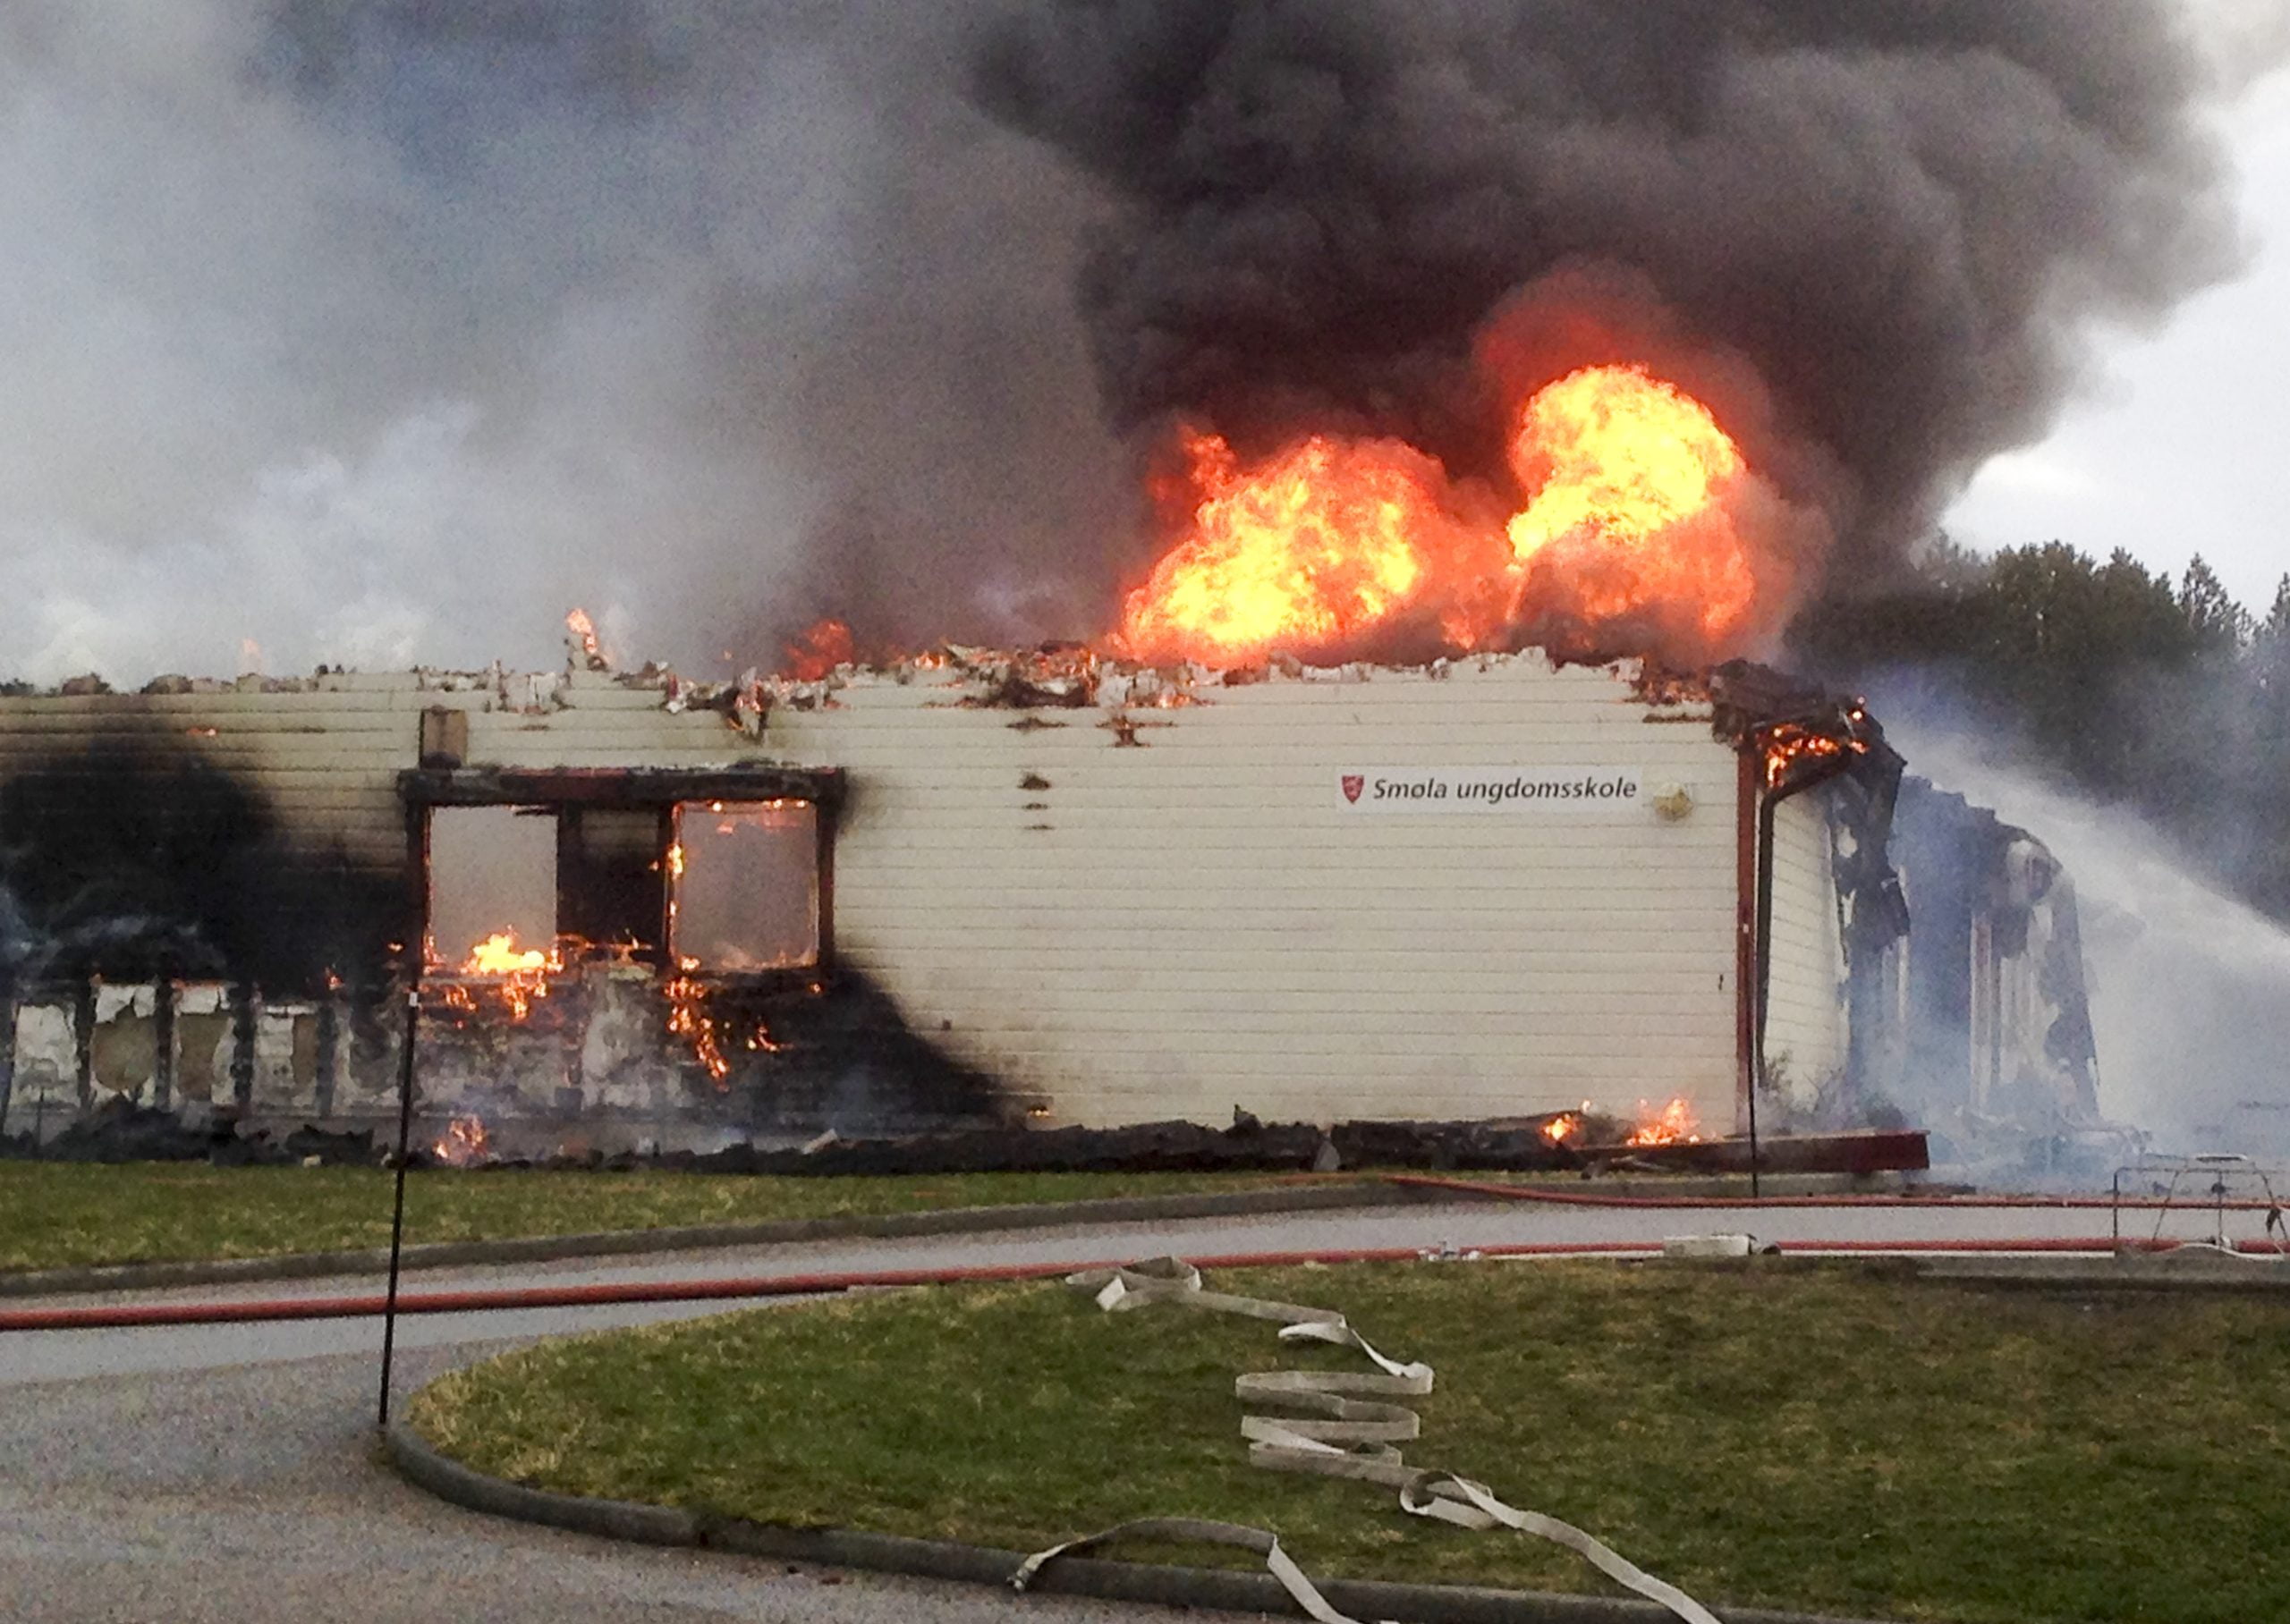 Puissant incendie dans le nouveau collège de Smøla - 3